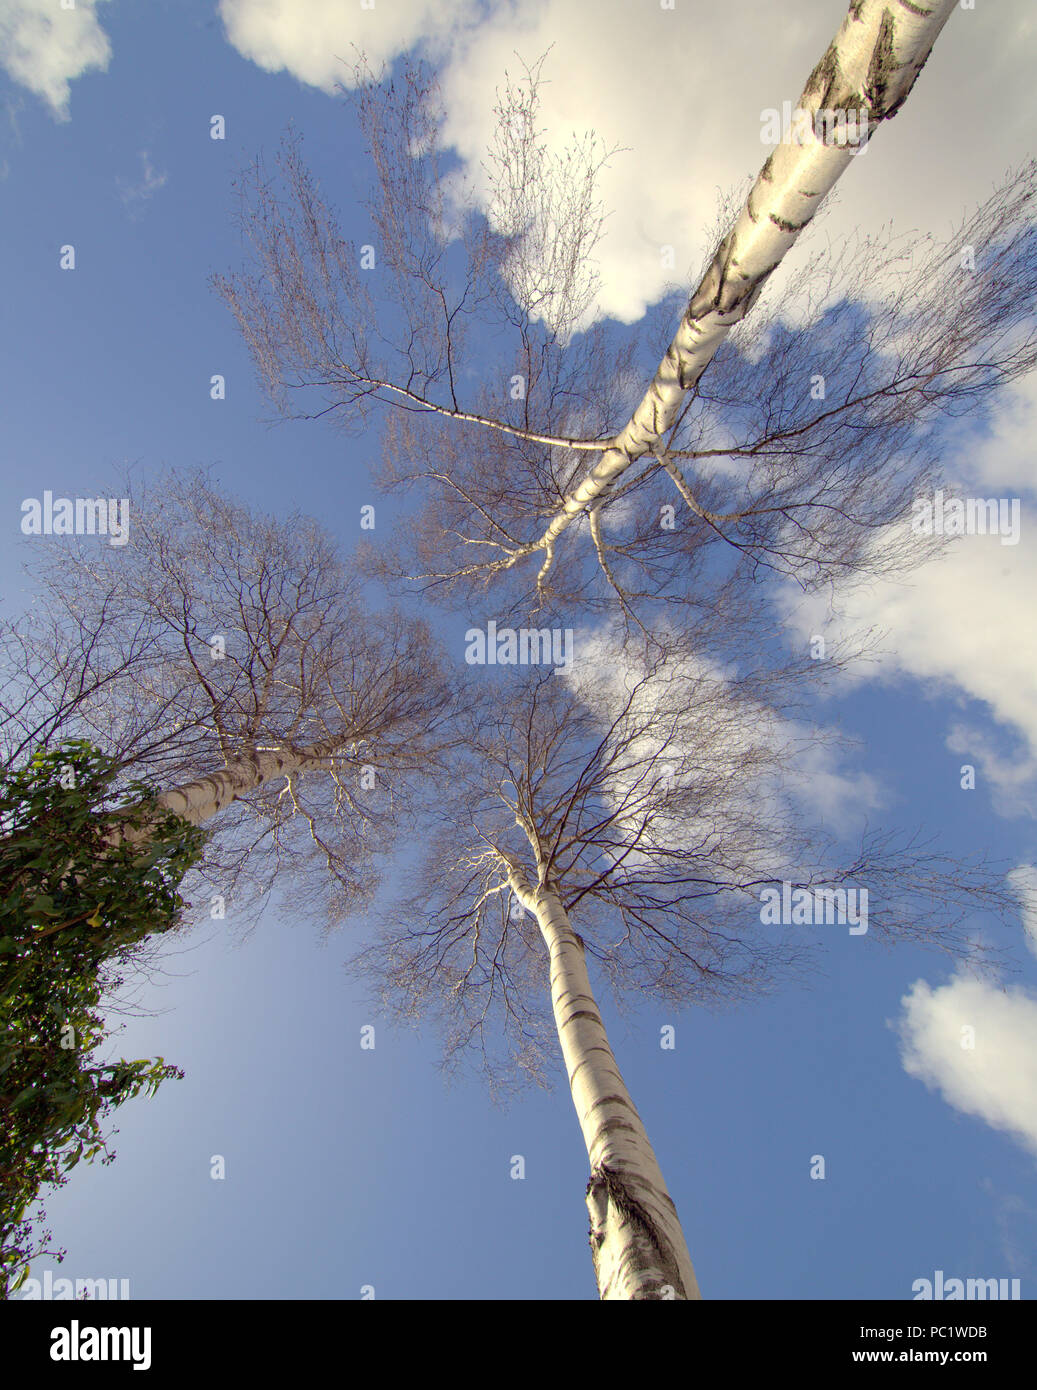 Abedul Plateado, mirando hacia el cielo azul con nubes blancas Foto de stock